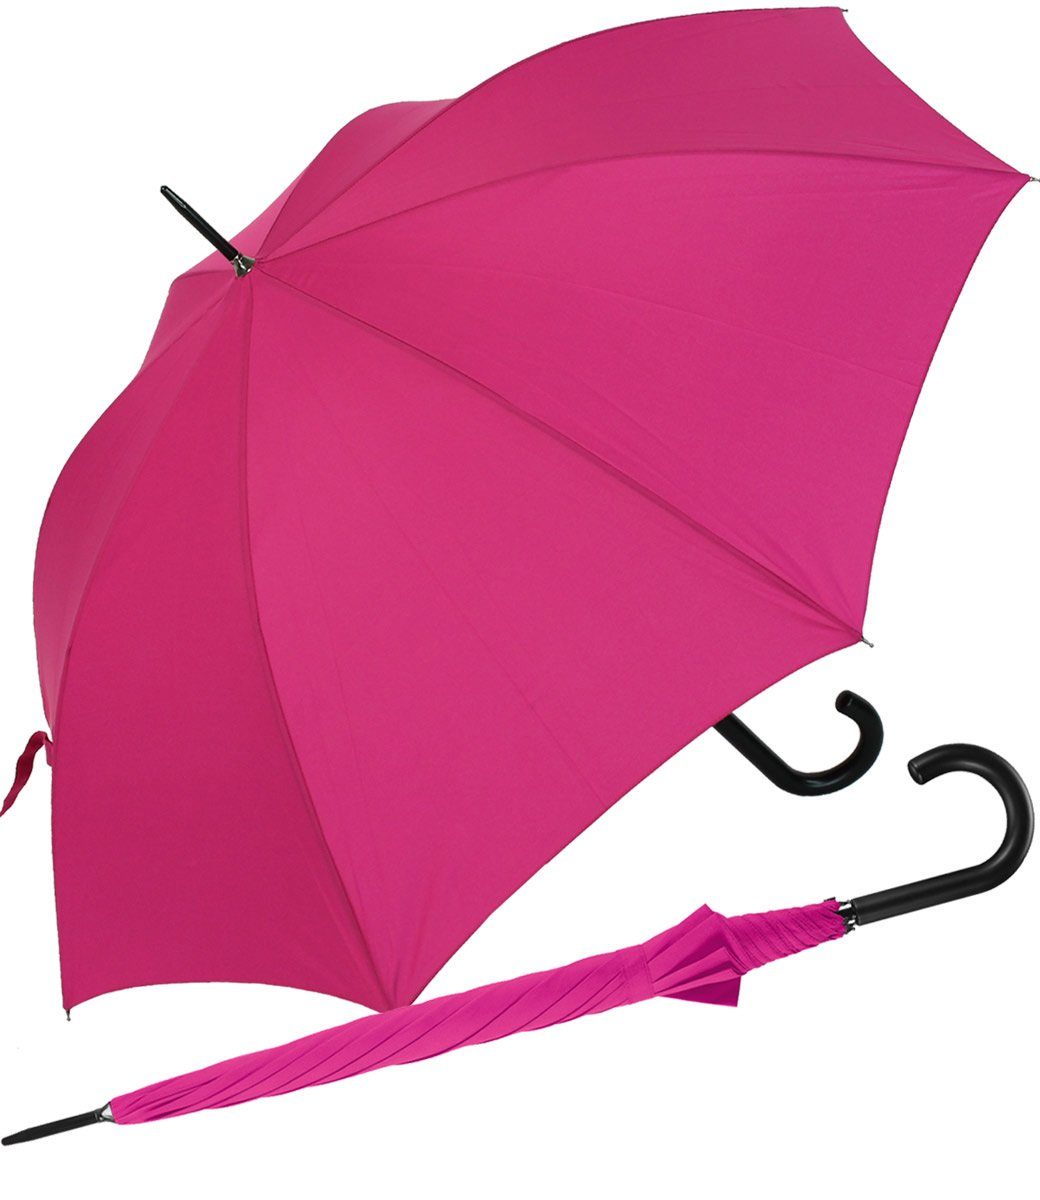 RS-Versand Langregenschirm großer stabiler Regenschirm mit Auf-Automatik, für Damen und Herren in vielen modischen Farben pink | Stockschirme